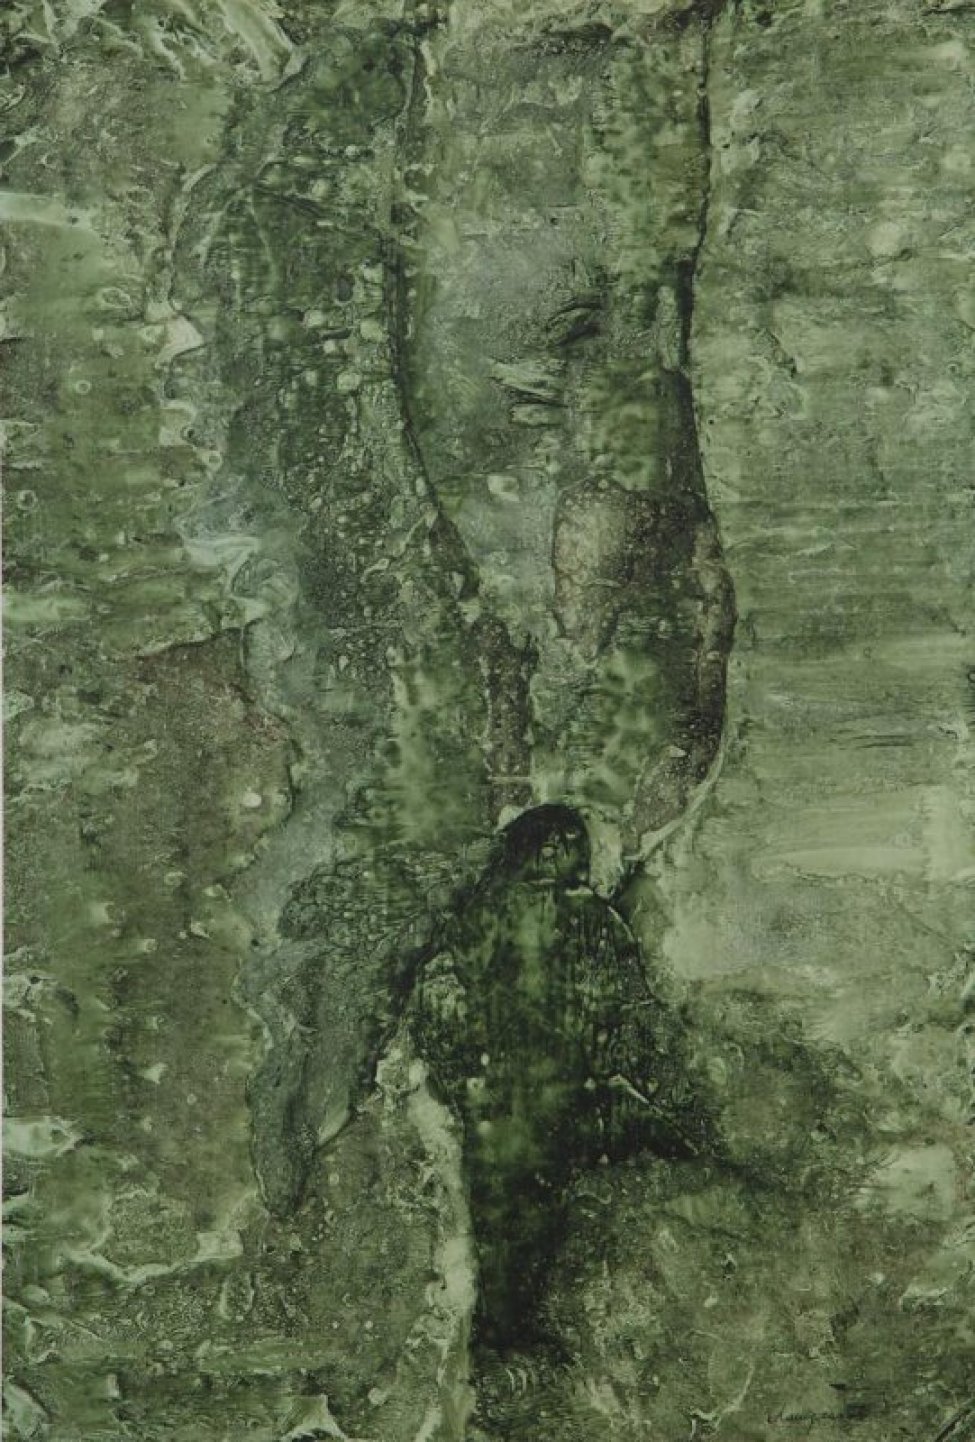 Изображено условное пространство темно-зеленого цвета с добавлением коричневого с выступающей из него стилизованной фигурой.